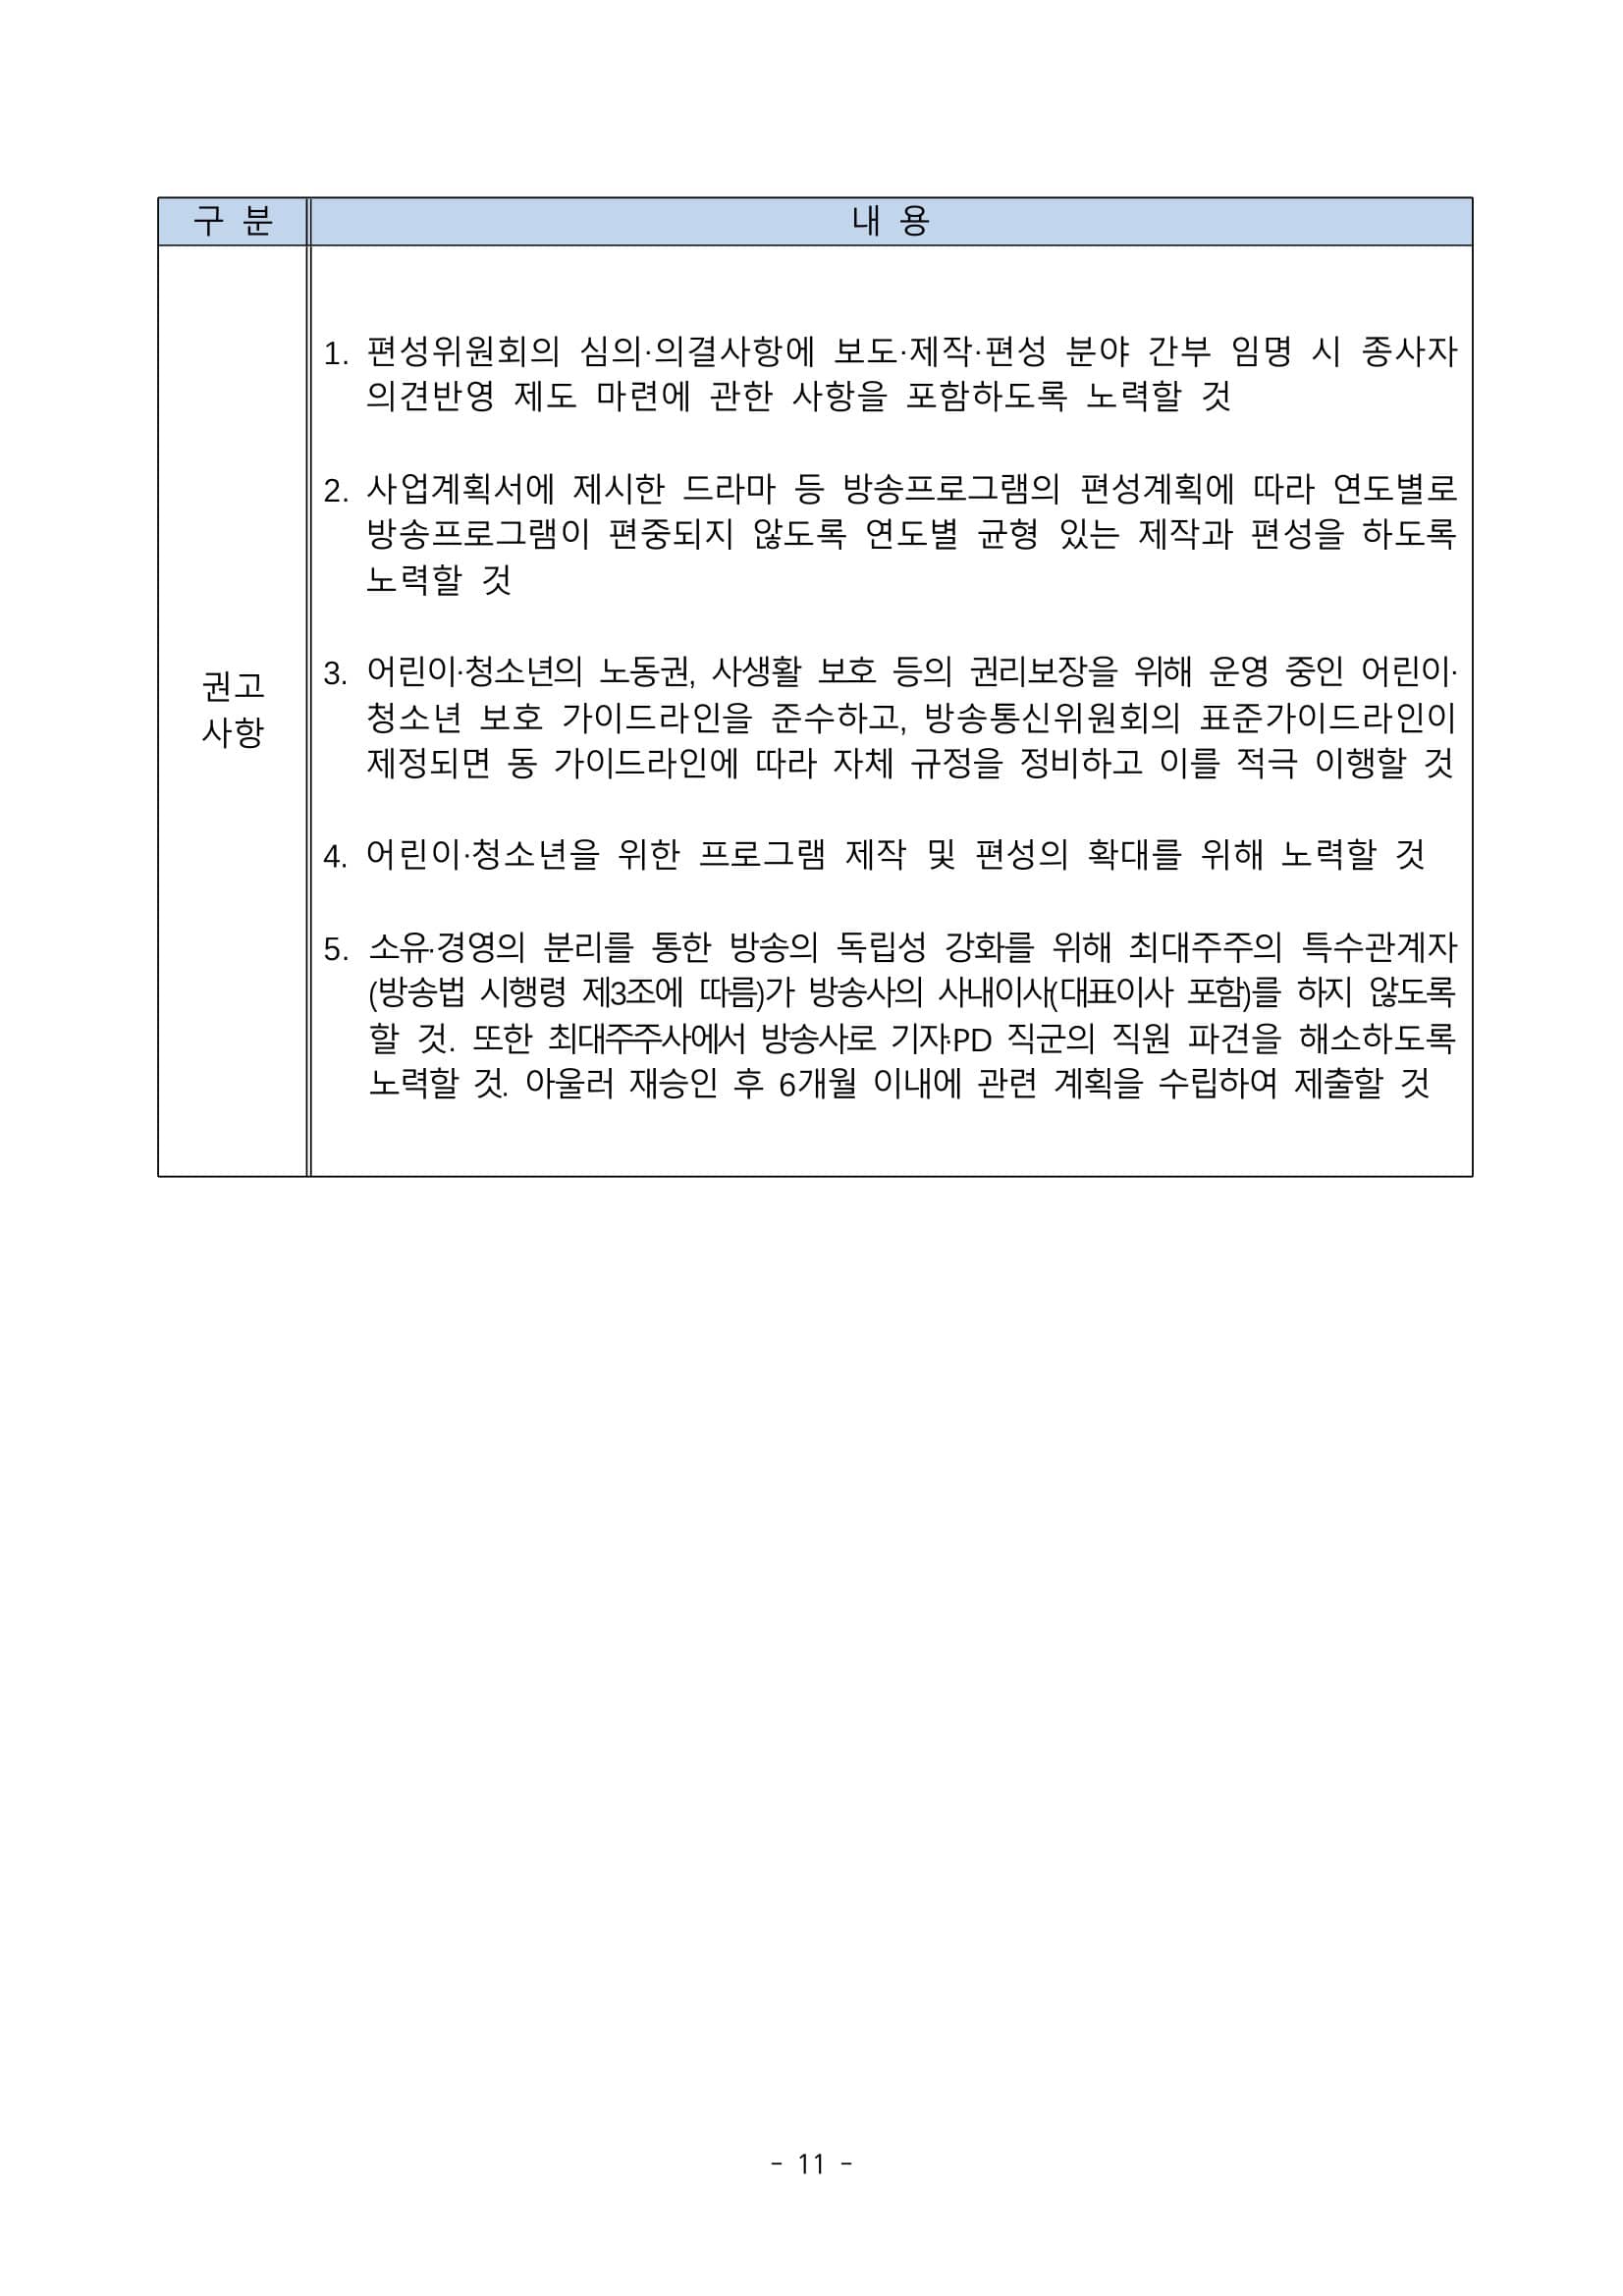 방송통신위원회(위원장 한상혁, 이하 ‘방통위’라 함)는 2020년 11월 27일(금) 14_0011.jpg